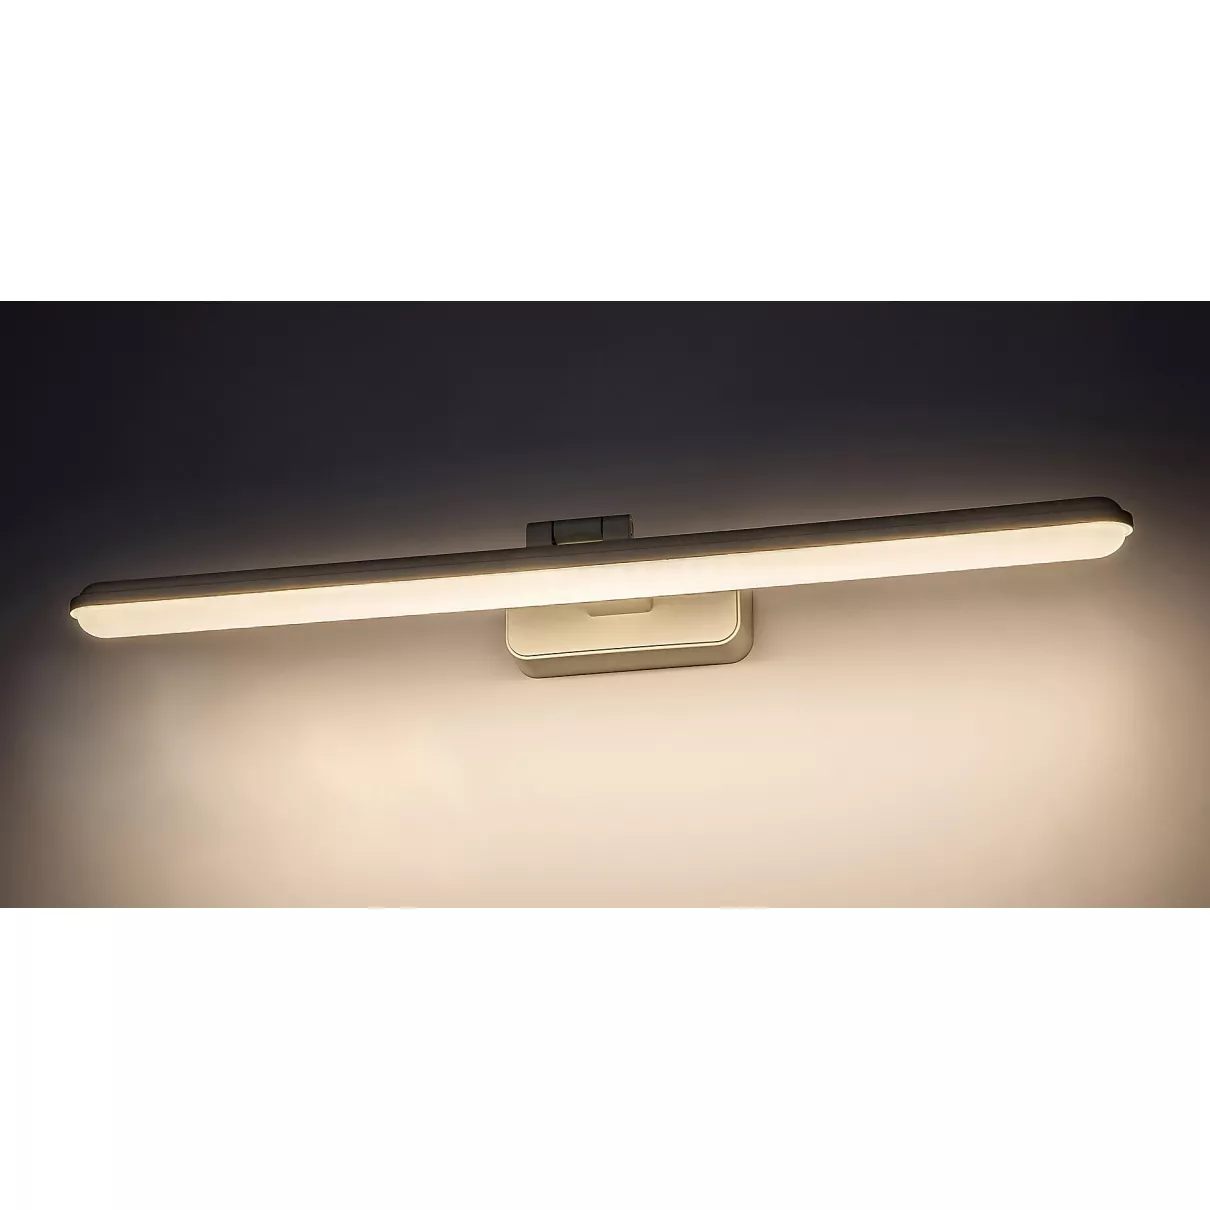 Nabil Képmegvilágító lámpa led  1100 Lumen, 60cm - Raba-71148